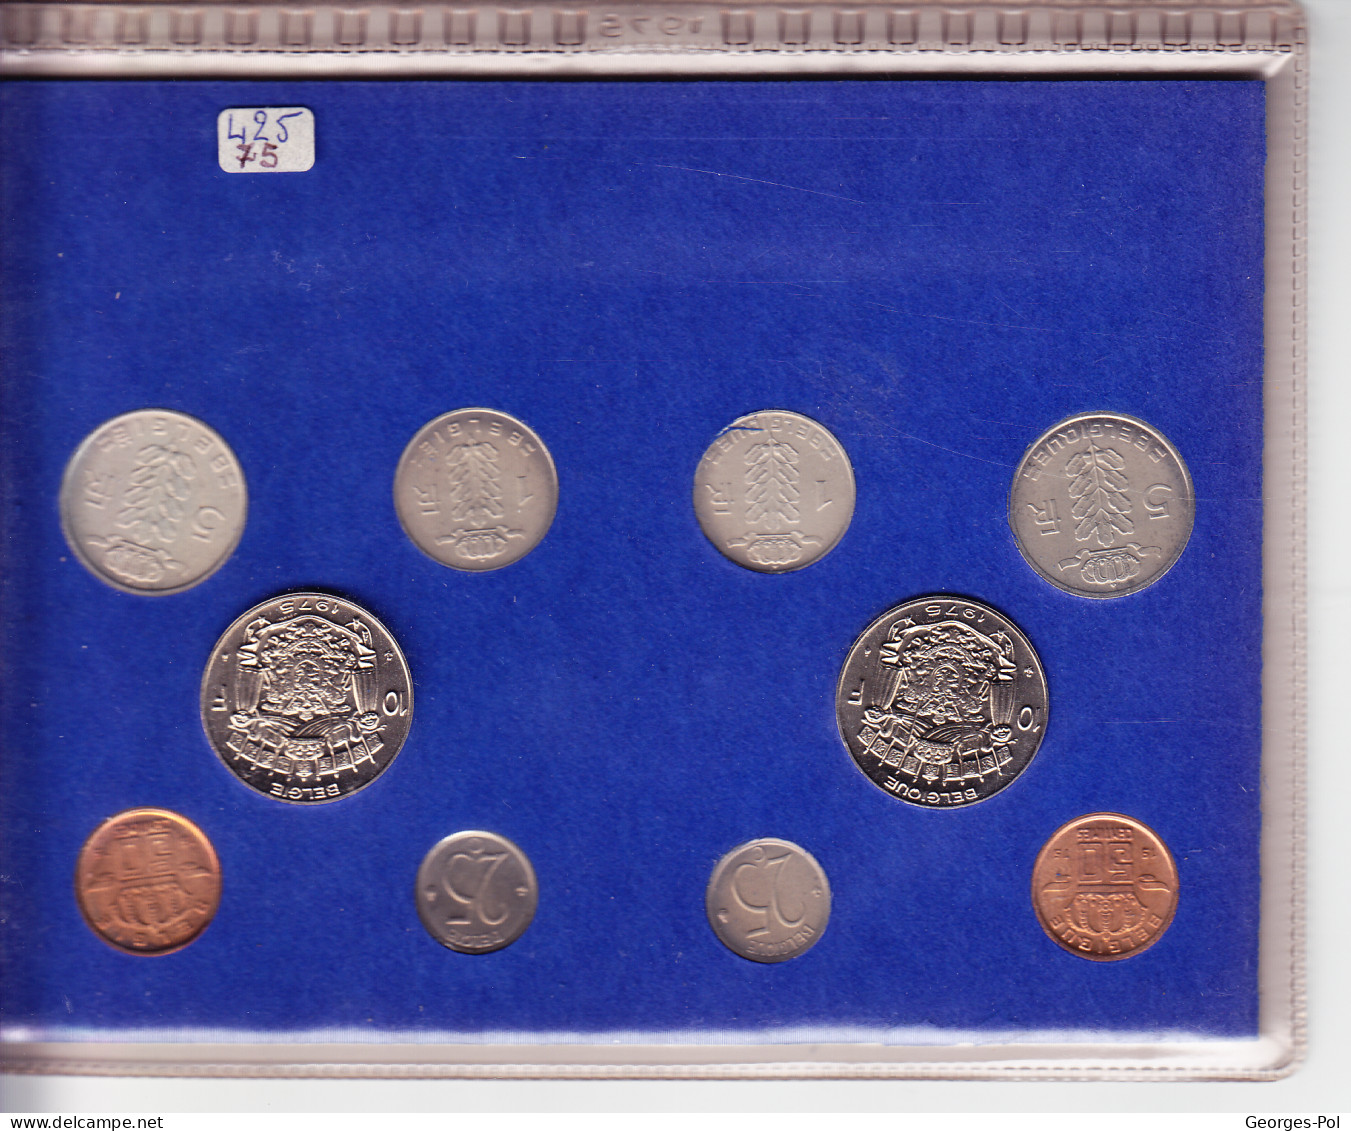 Monnaie Royale De Belgique 1975 Koninklijke Munt Van België. Carte De10 Pièces Non Circulées - FDC, BU, Proofs & Presentation Cases